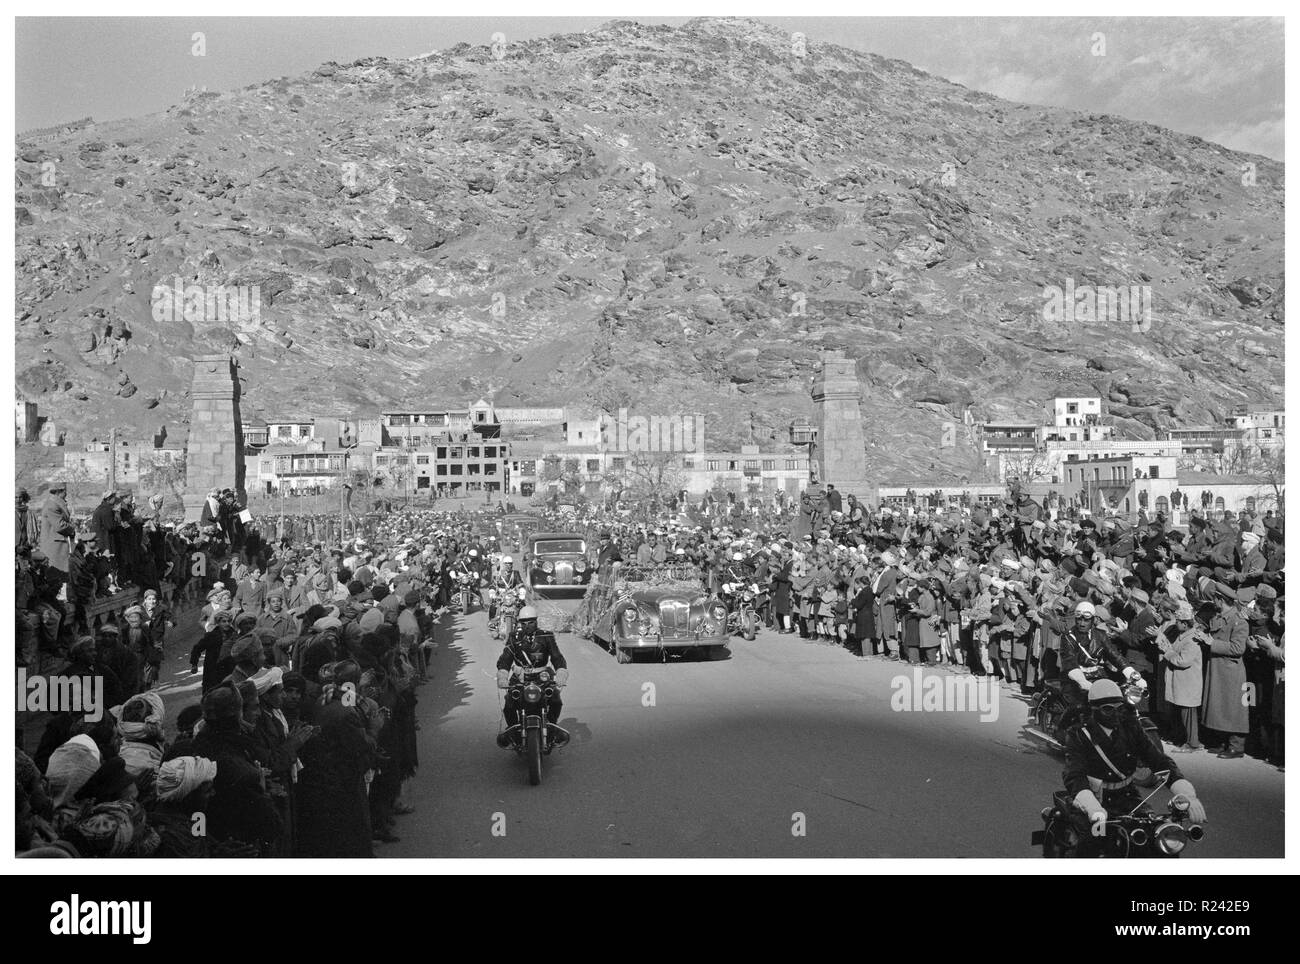 Foto von der Autokorso für Präsident Eisenhower's (1890-1961) Besuch in Kabul, Afghanistan. Fotografiert von Thomas J. O'Halloran. Datierte 1959 Stockfoto